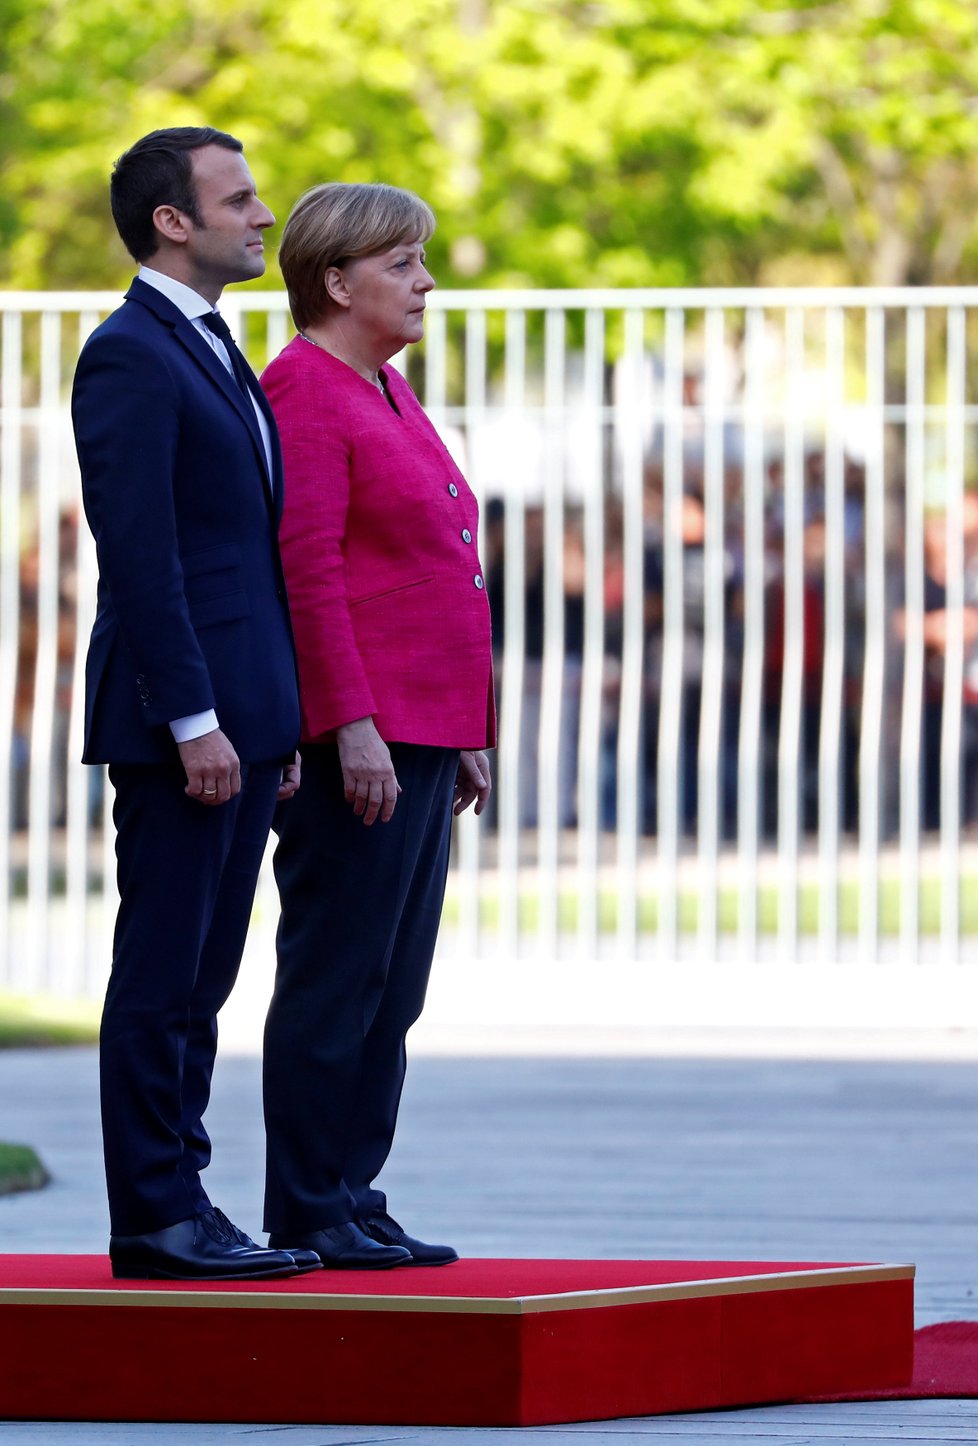 Emmanuel Macron dorazil na svou první státní návštěvu. Kancléřka Merkelová ho v Berlíně přivítala s vojenskými poctami.